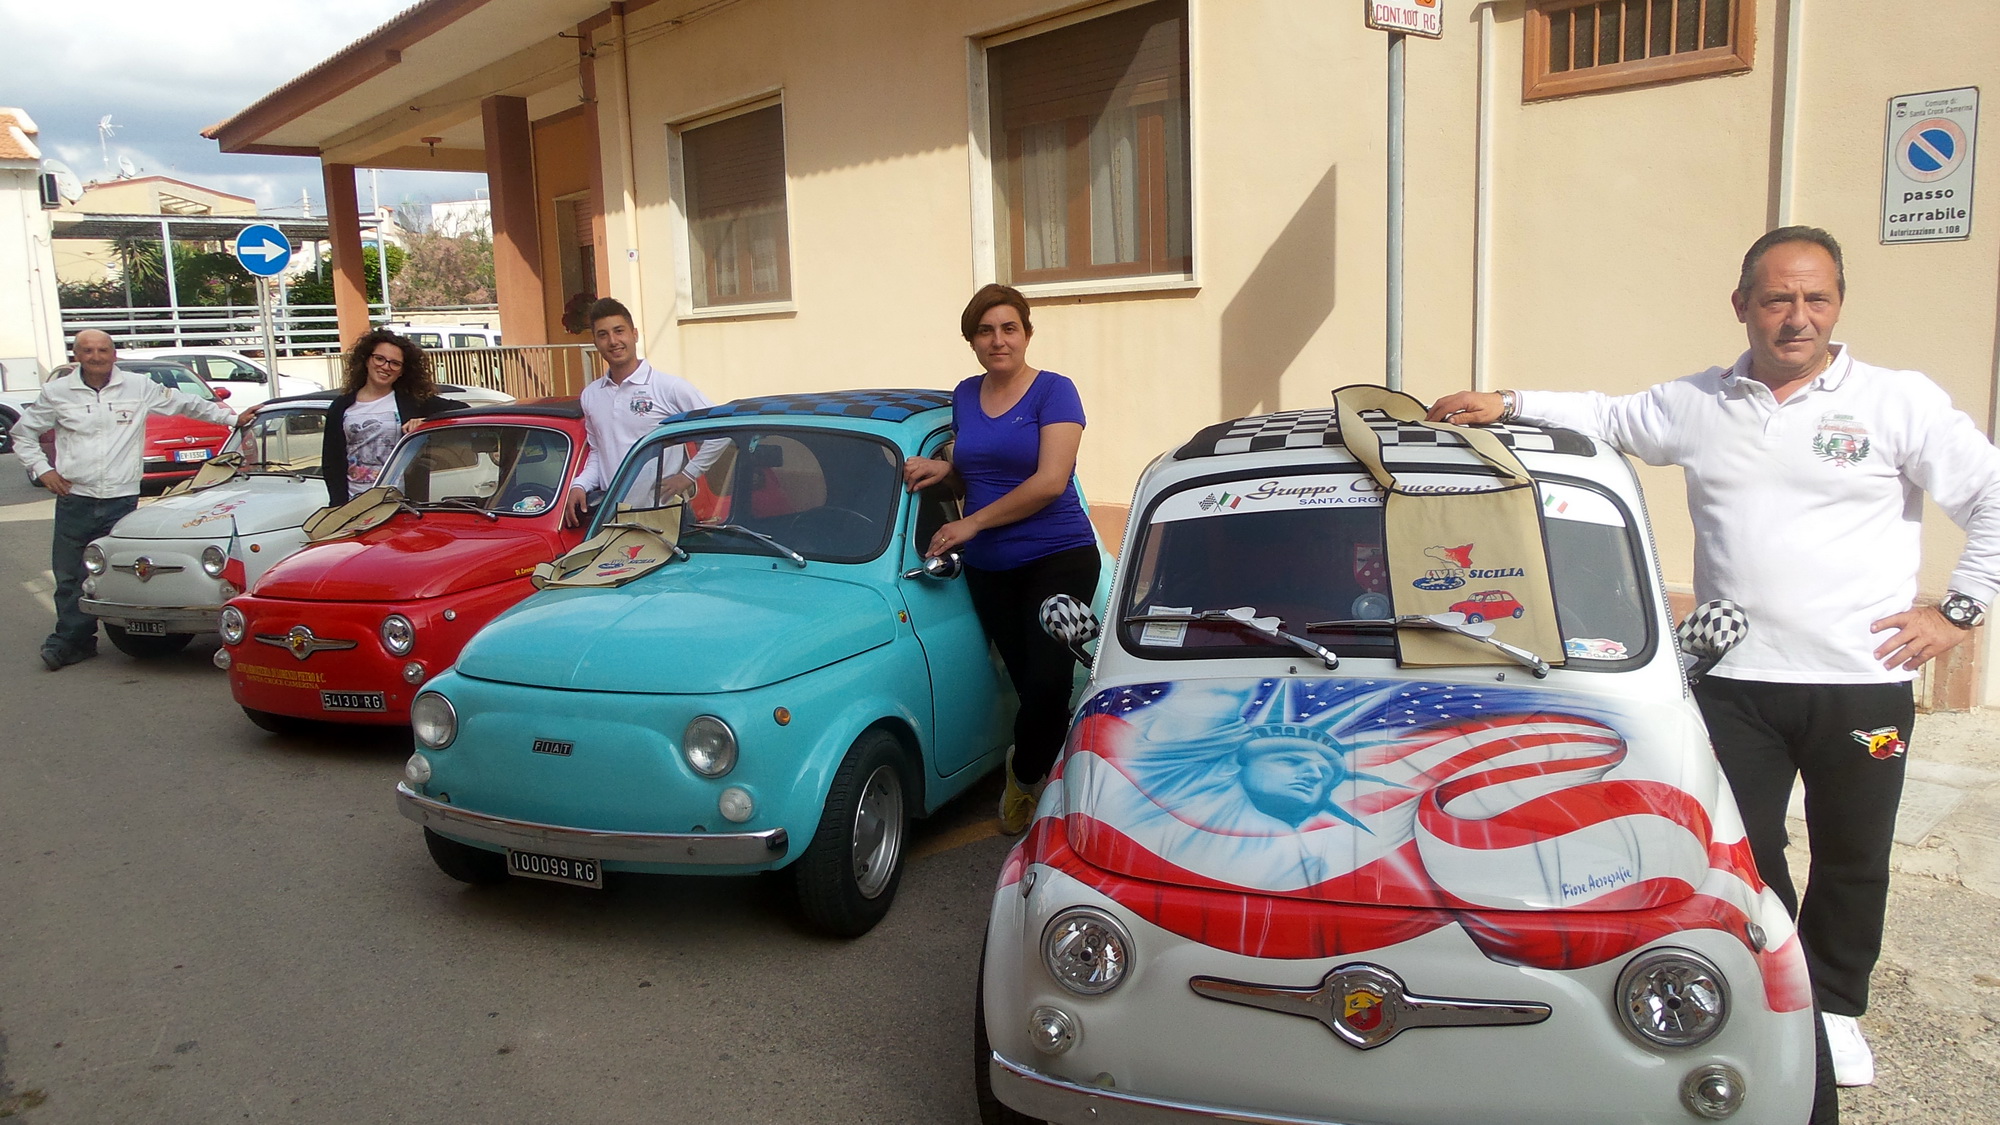  Le storiche Fiat 500 in chiave moderna: a Punta Secca il raduno FOTO